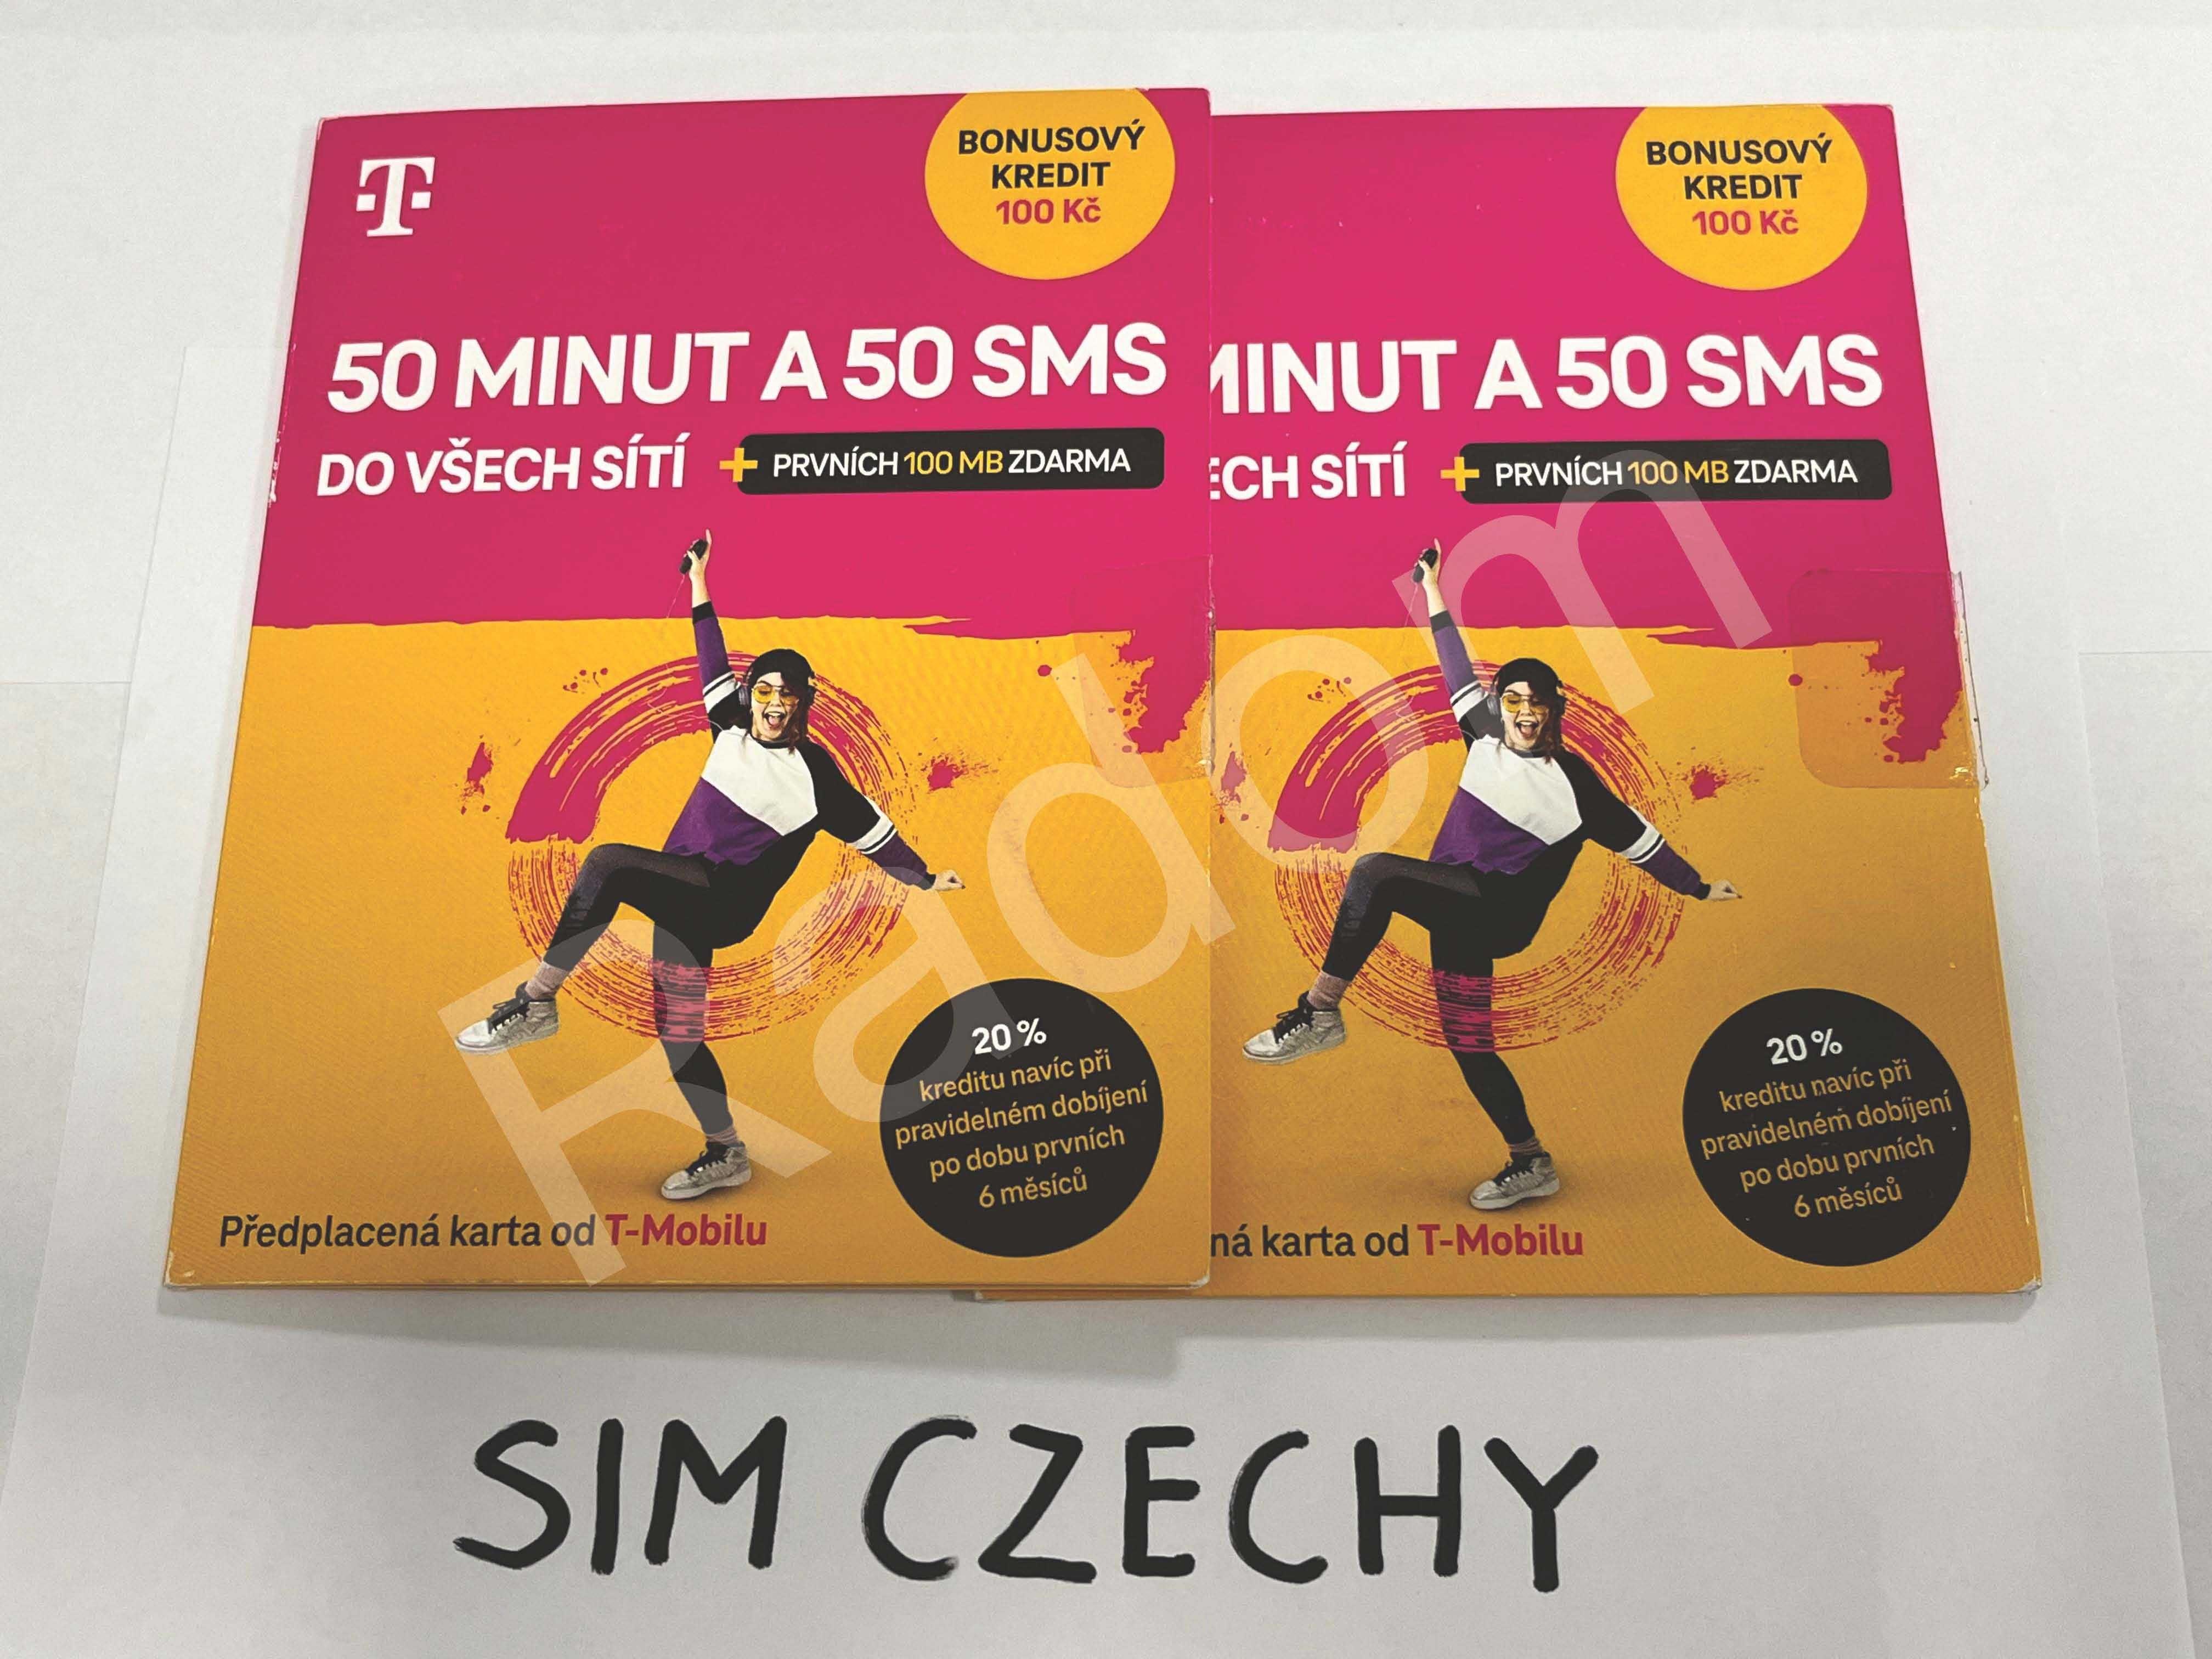 Czechy sim karta T-mobile 100kc saldo nowe startery czeskie tmobile